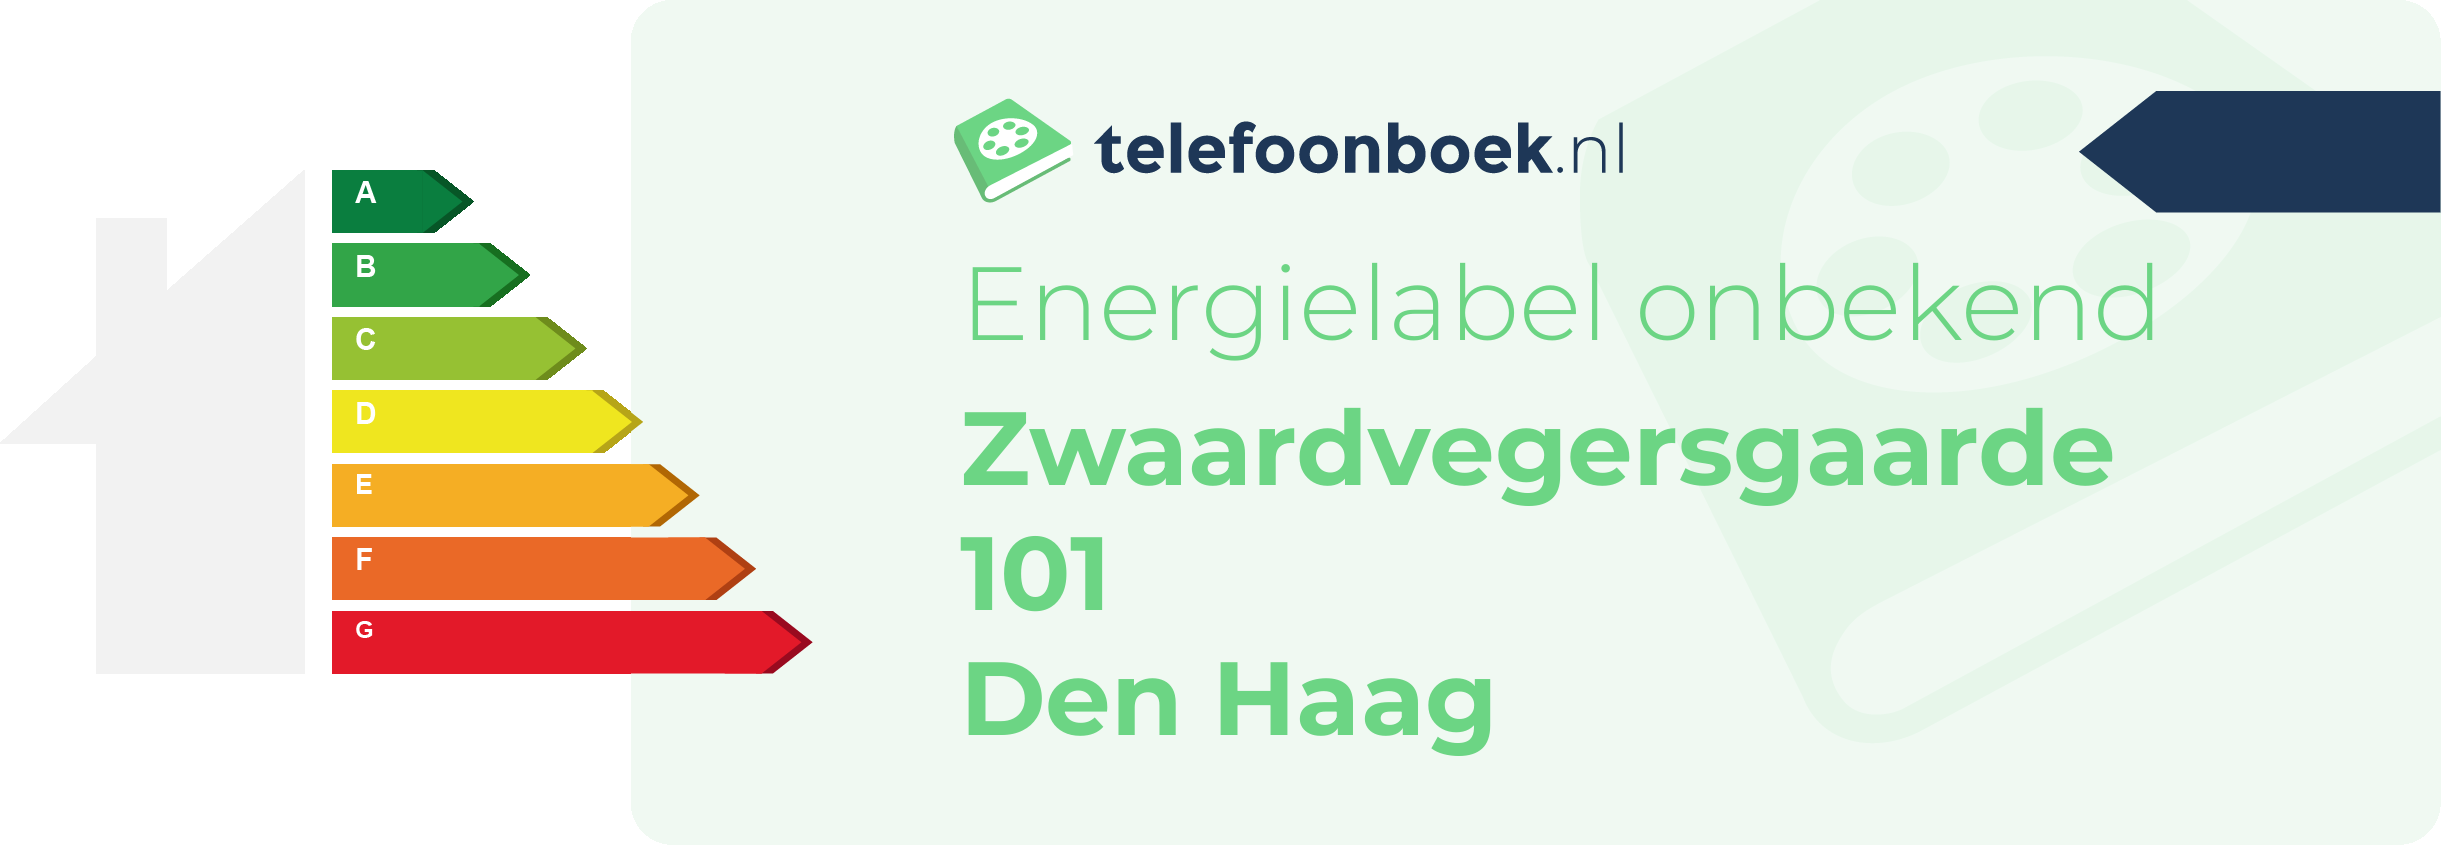 Energielabel Zwaardvegersgaarde 101 Den Haag